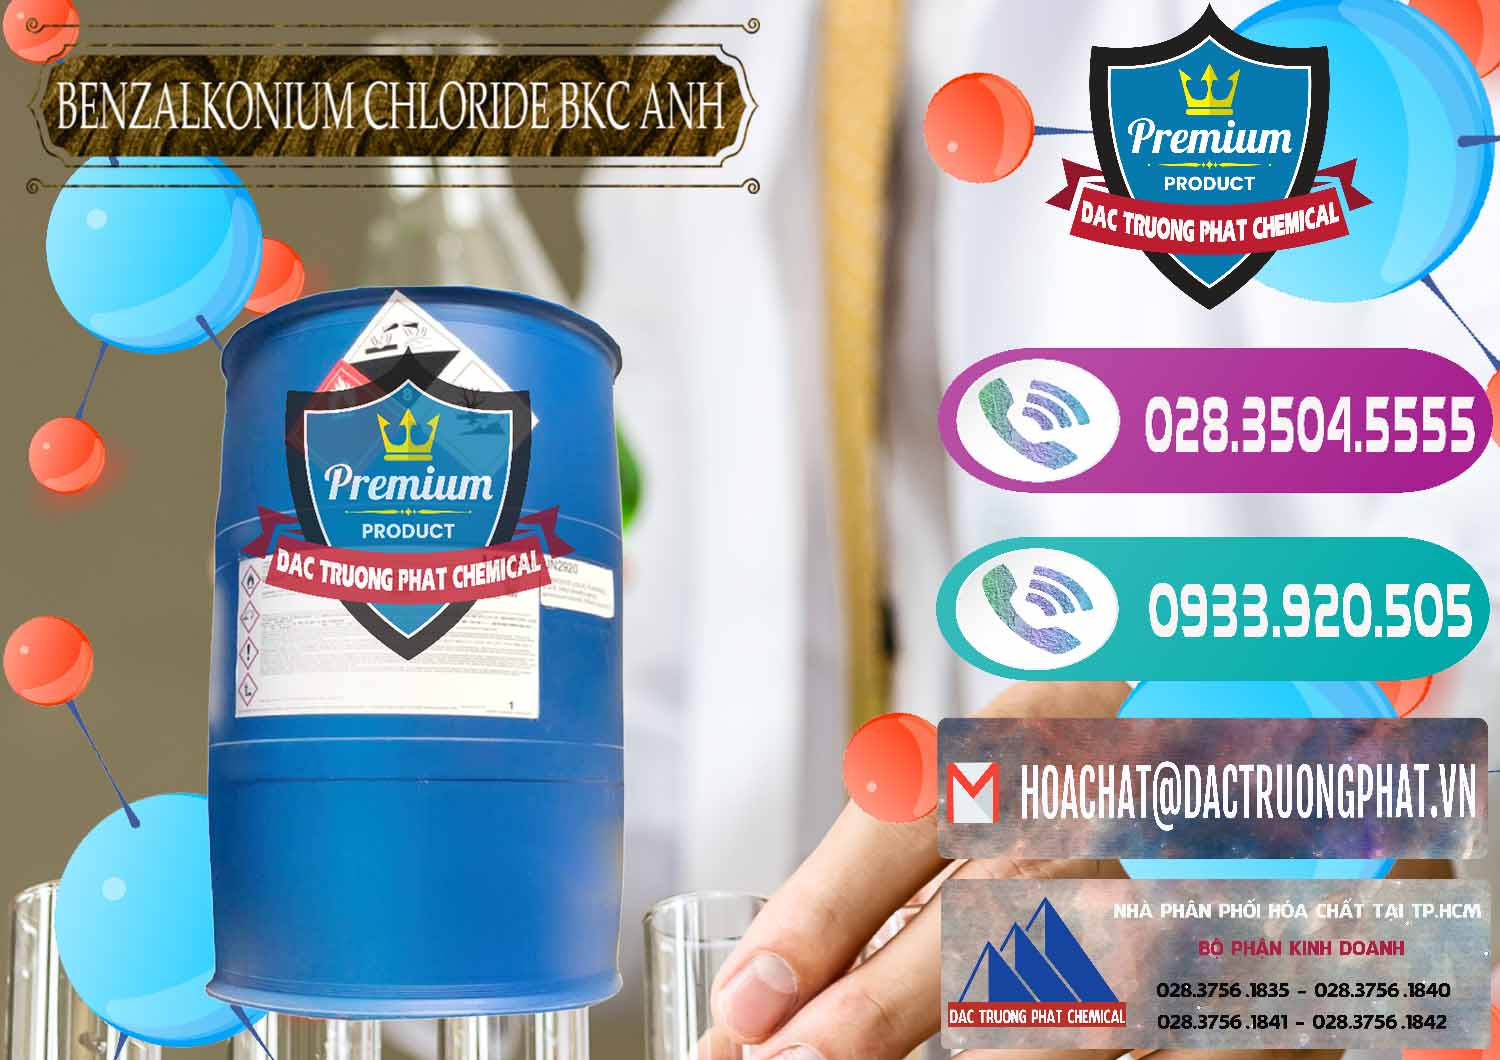 Đơn vị chuyên bán & phân phối BKC - Benzalkonium Chloride 80% Anh Quốc Uk Kingdoms - 0457 - Công ty phân phối & cung cấp hóa chất tại TP.HCM - hoachatxulynuoc.com